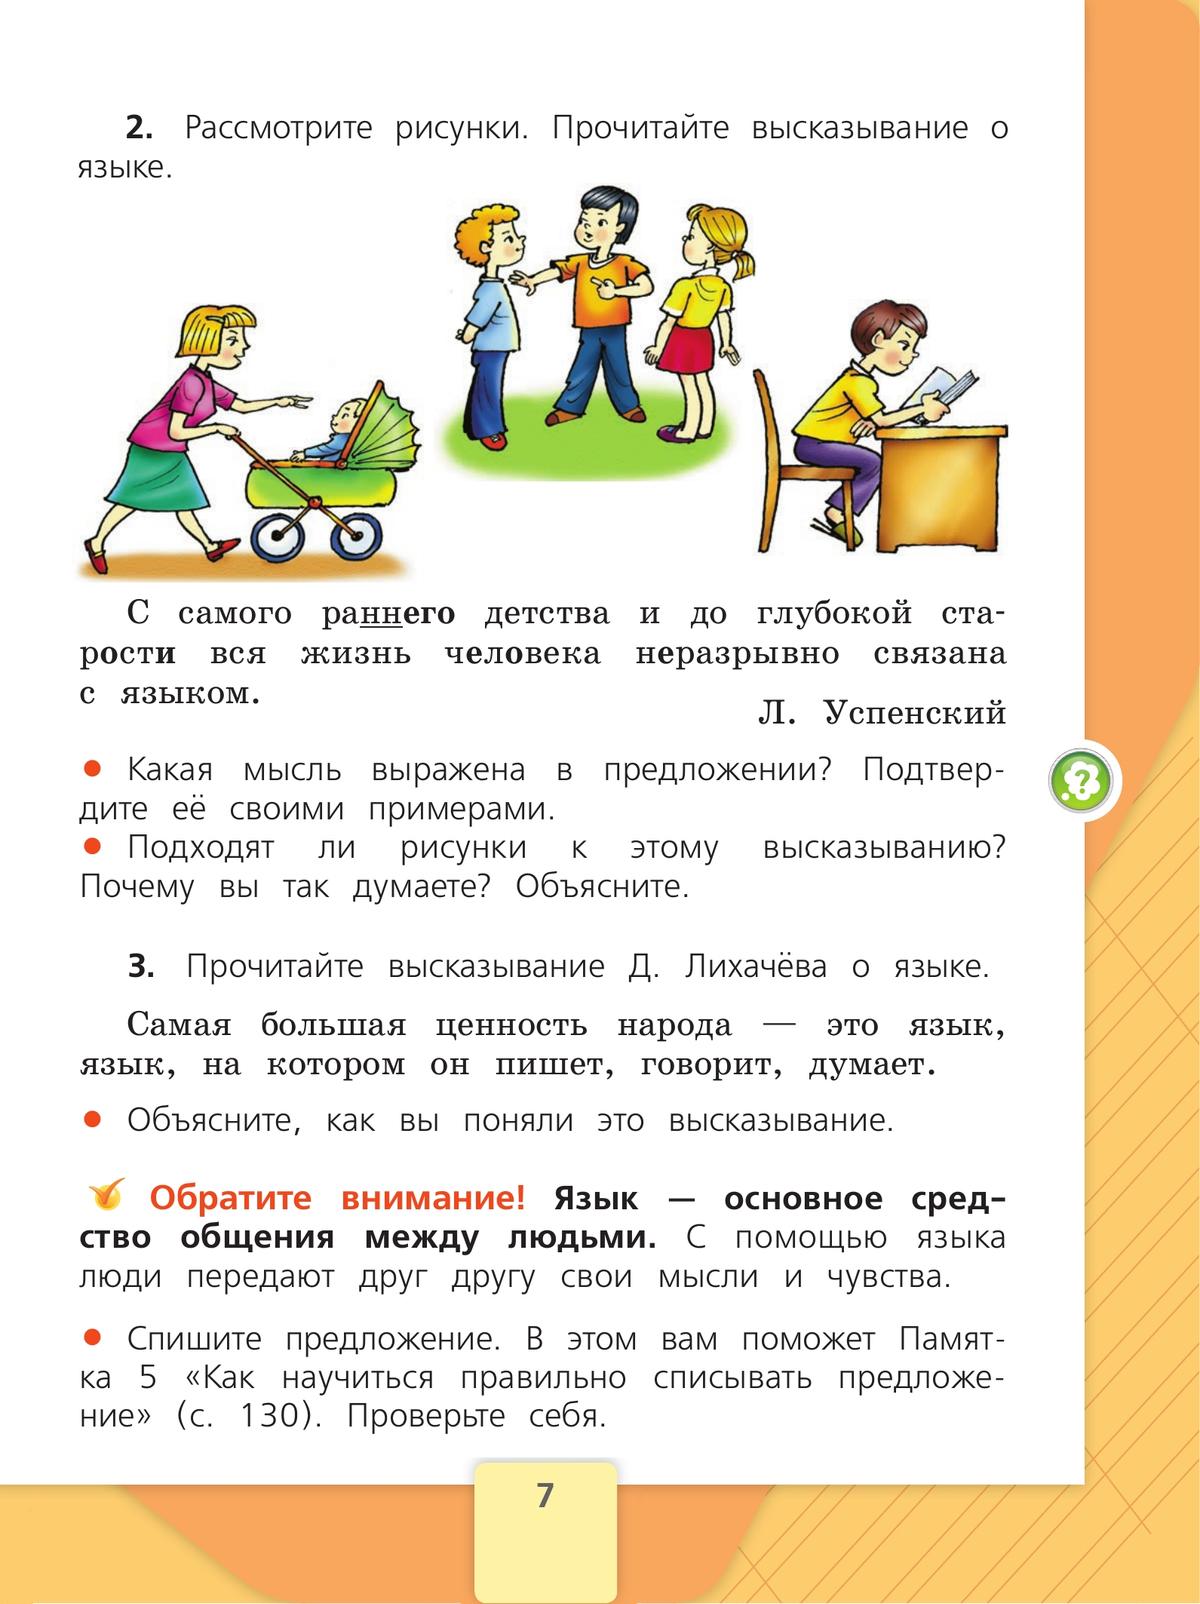 Русский язык. 2 класс. Учебник. В 2 ч. Часть 1 5